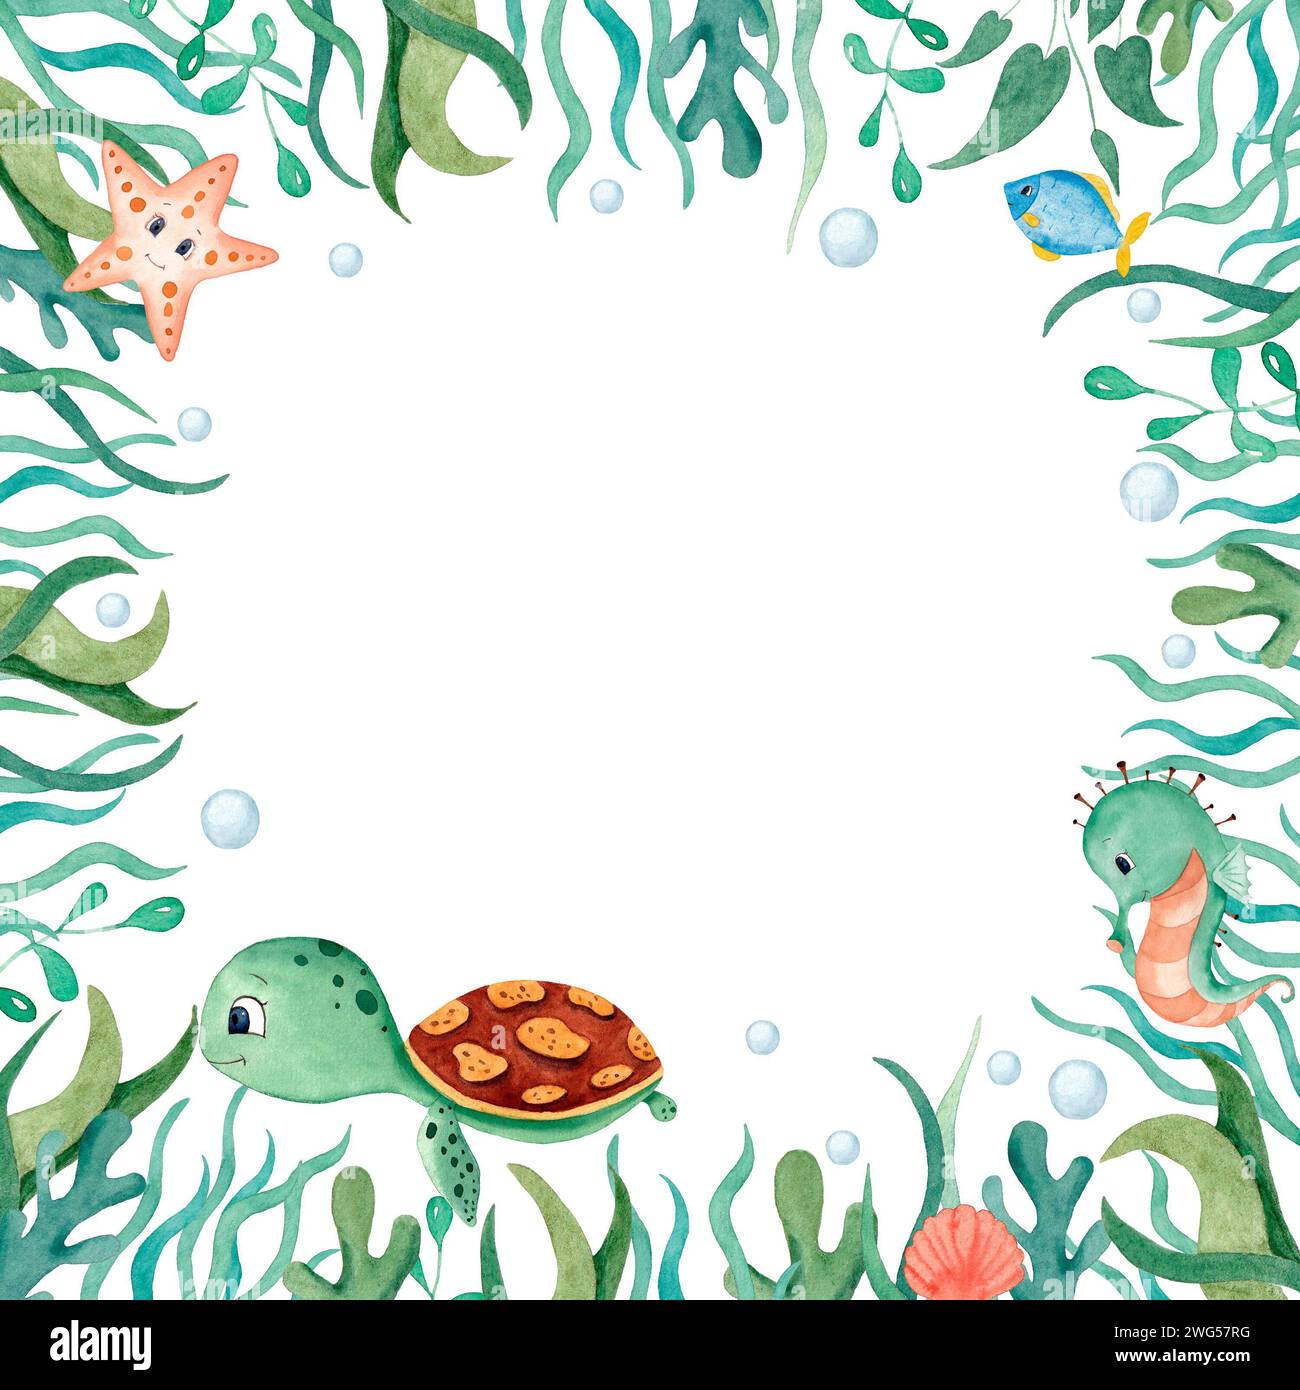 Bordure de cadre océanique aquarelle avec tortue mignonne, algues, étoiles de mer, récif de corail, poissons, hippocampe et c. Illustration pour la conception, l'impression ou l'arrière-plan Banque D'Images